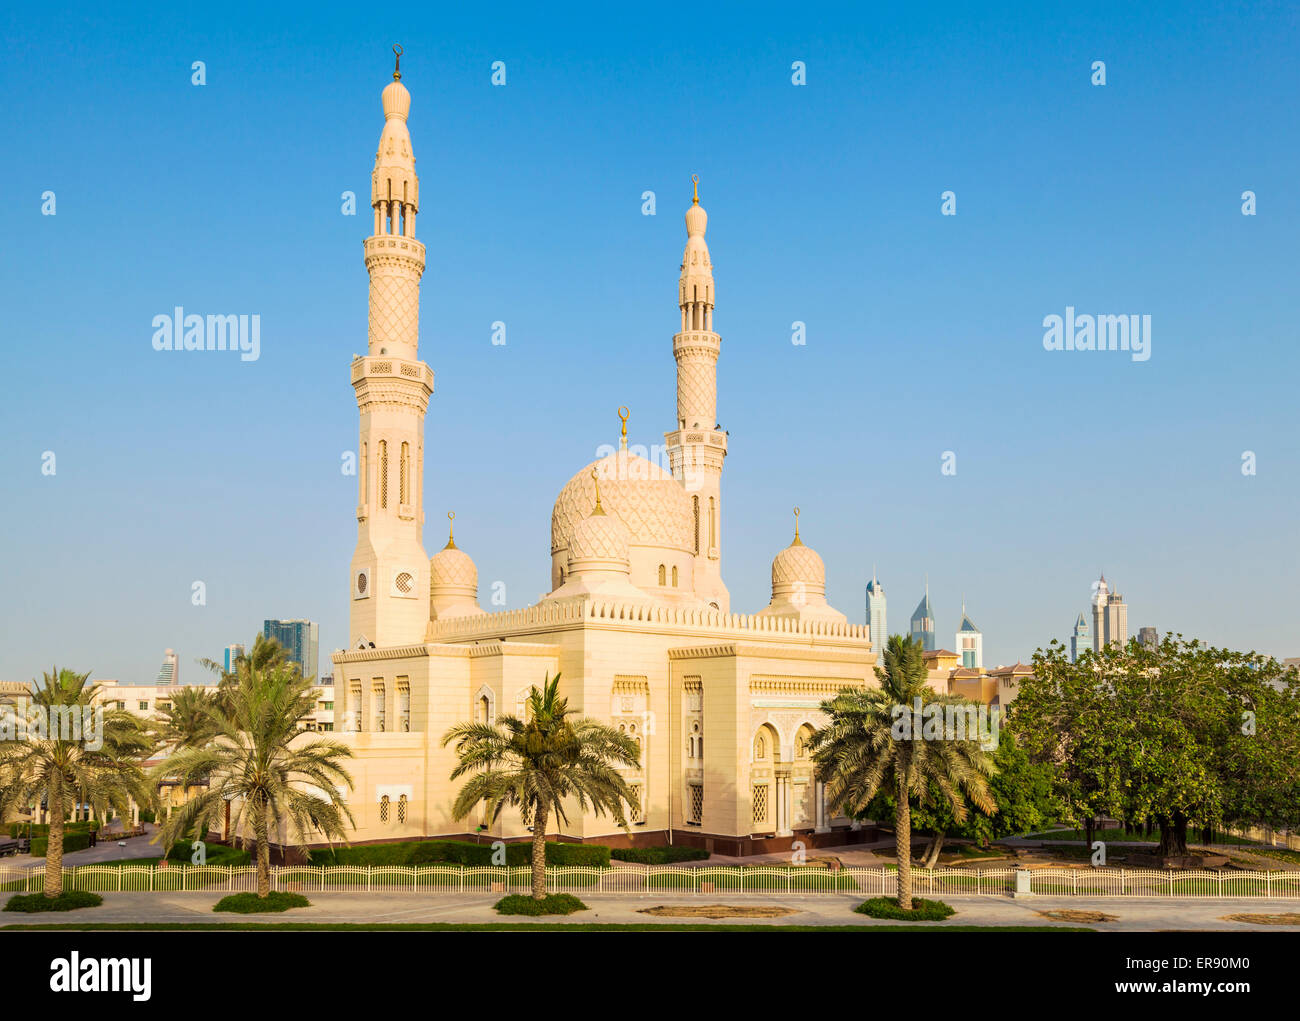 La mosquée de Jumeirah Dubai, Dubaï, Émirats arabes unis, ÉMIRATS ARABES UNIS, Moyen Orient Banque D'Images